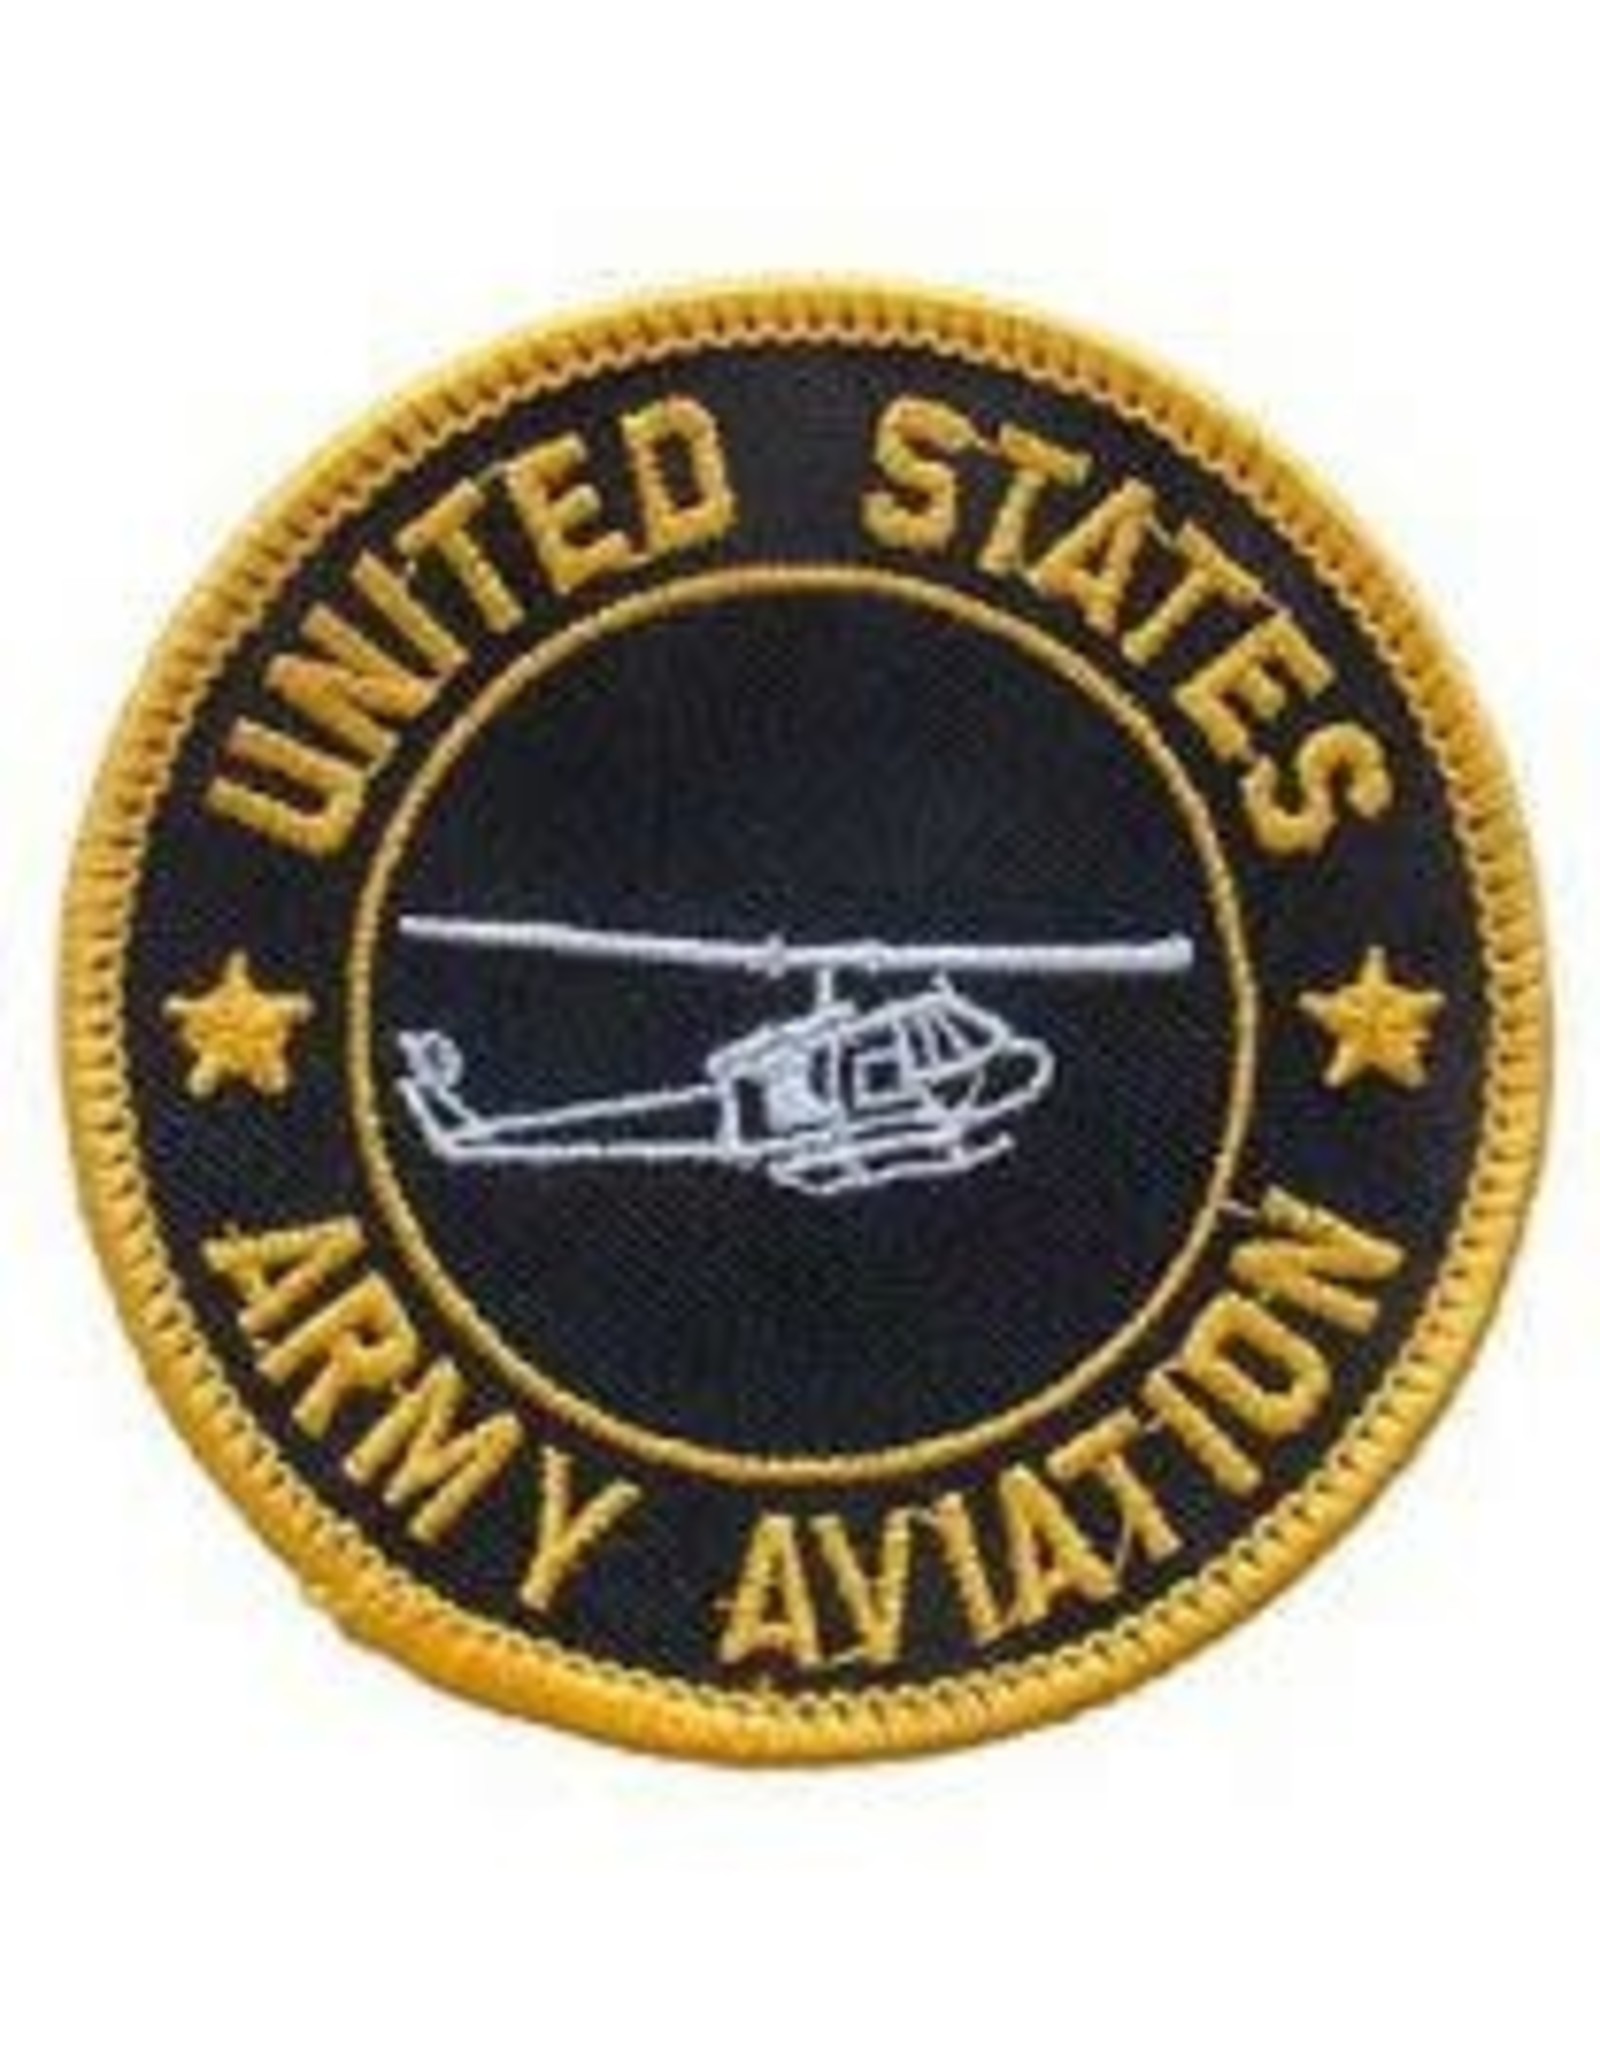 Patch - Army Aviation